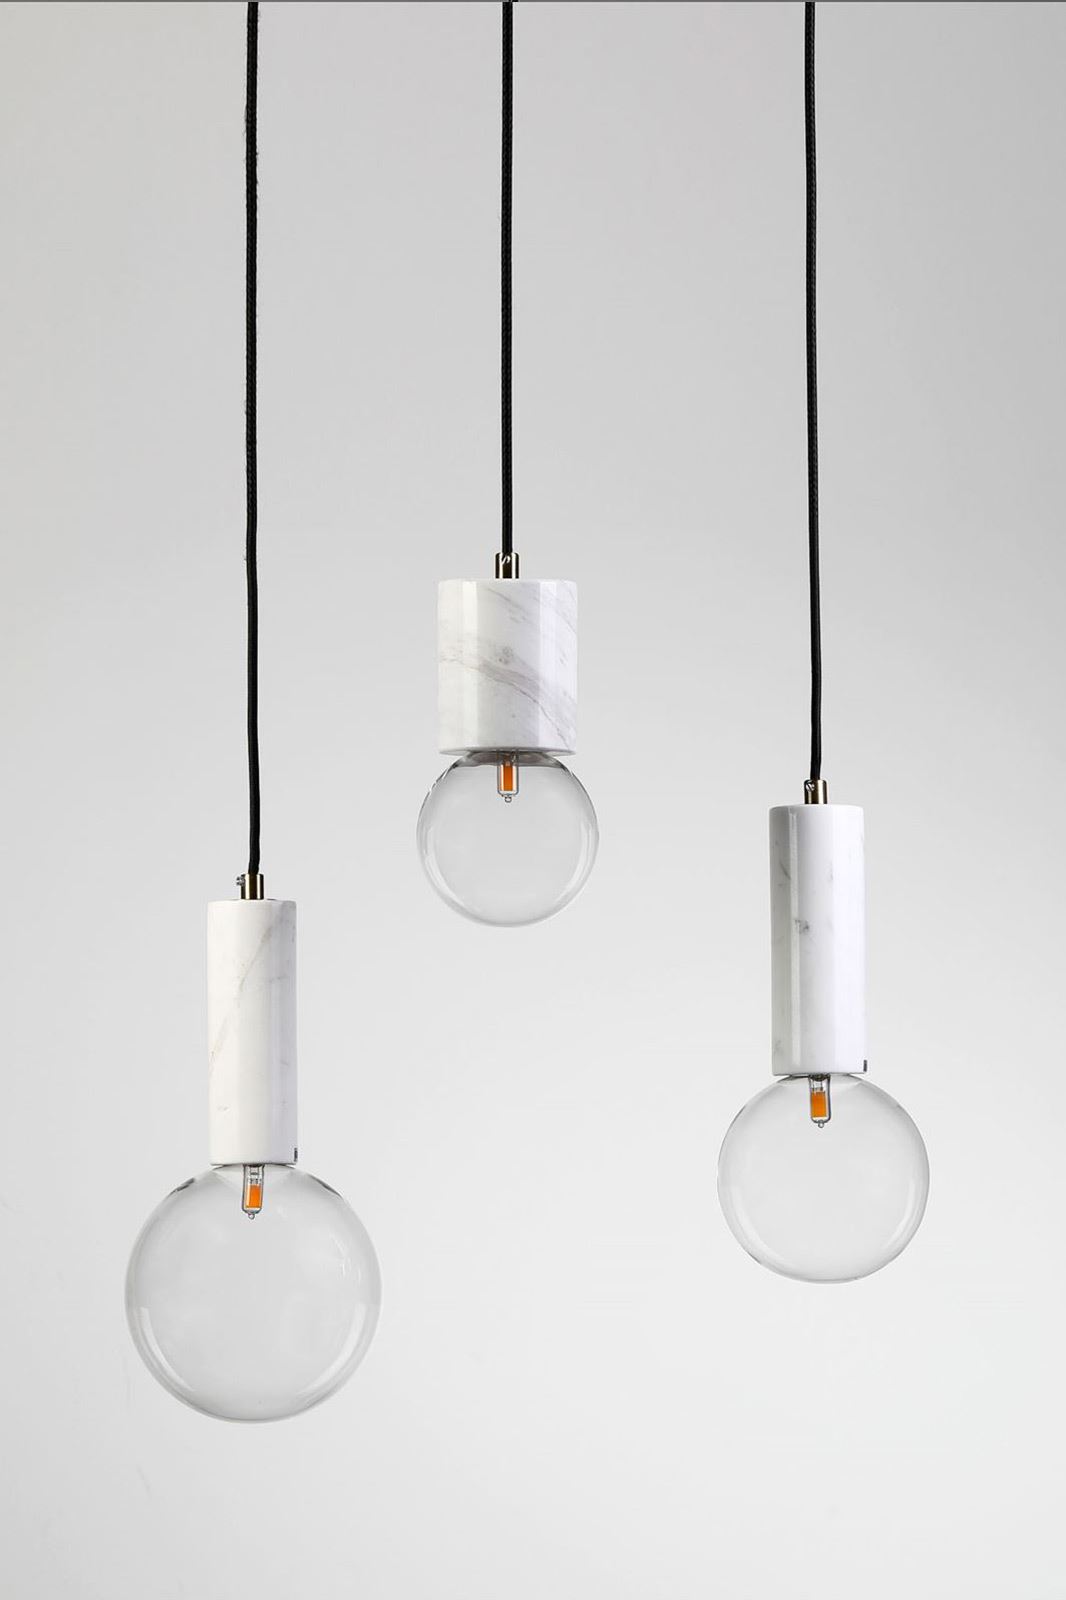 גופי תאורה מקטגוריית: מנורות תליה ,שם המוצר: BADOLINA